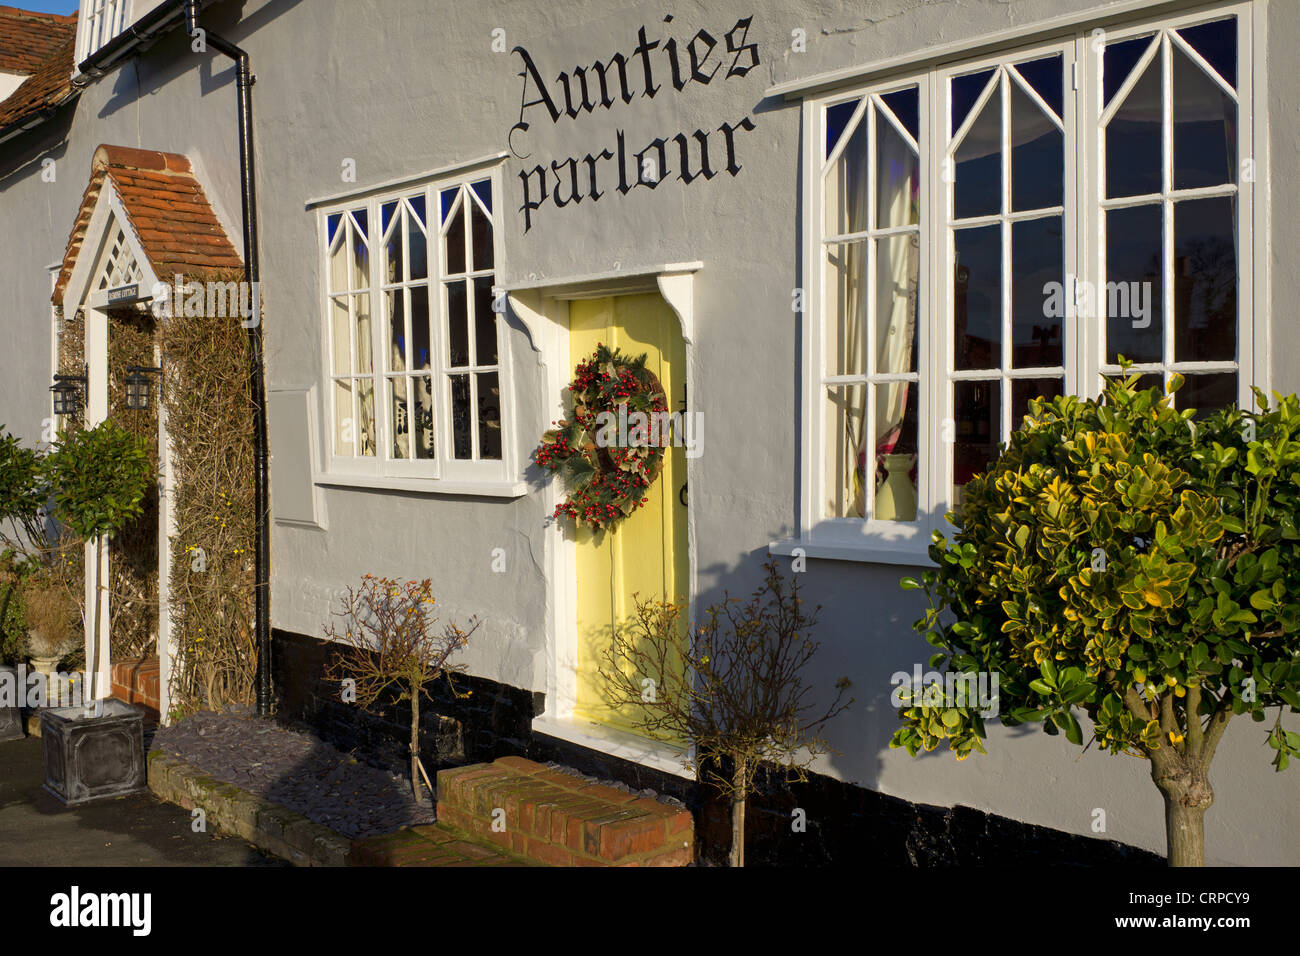 Salon de tantes, une petite boutique spécialisée dans la maison des idées dans le joli village de Finchingfield. Banque D'Images